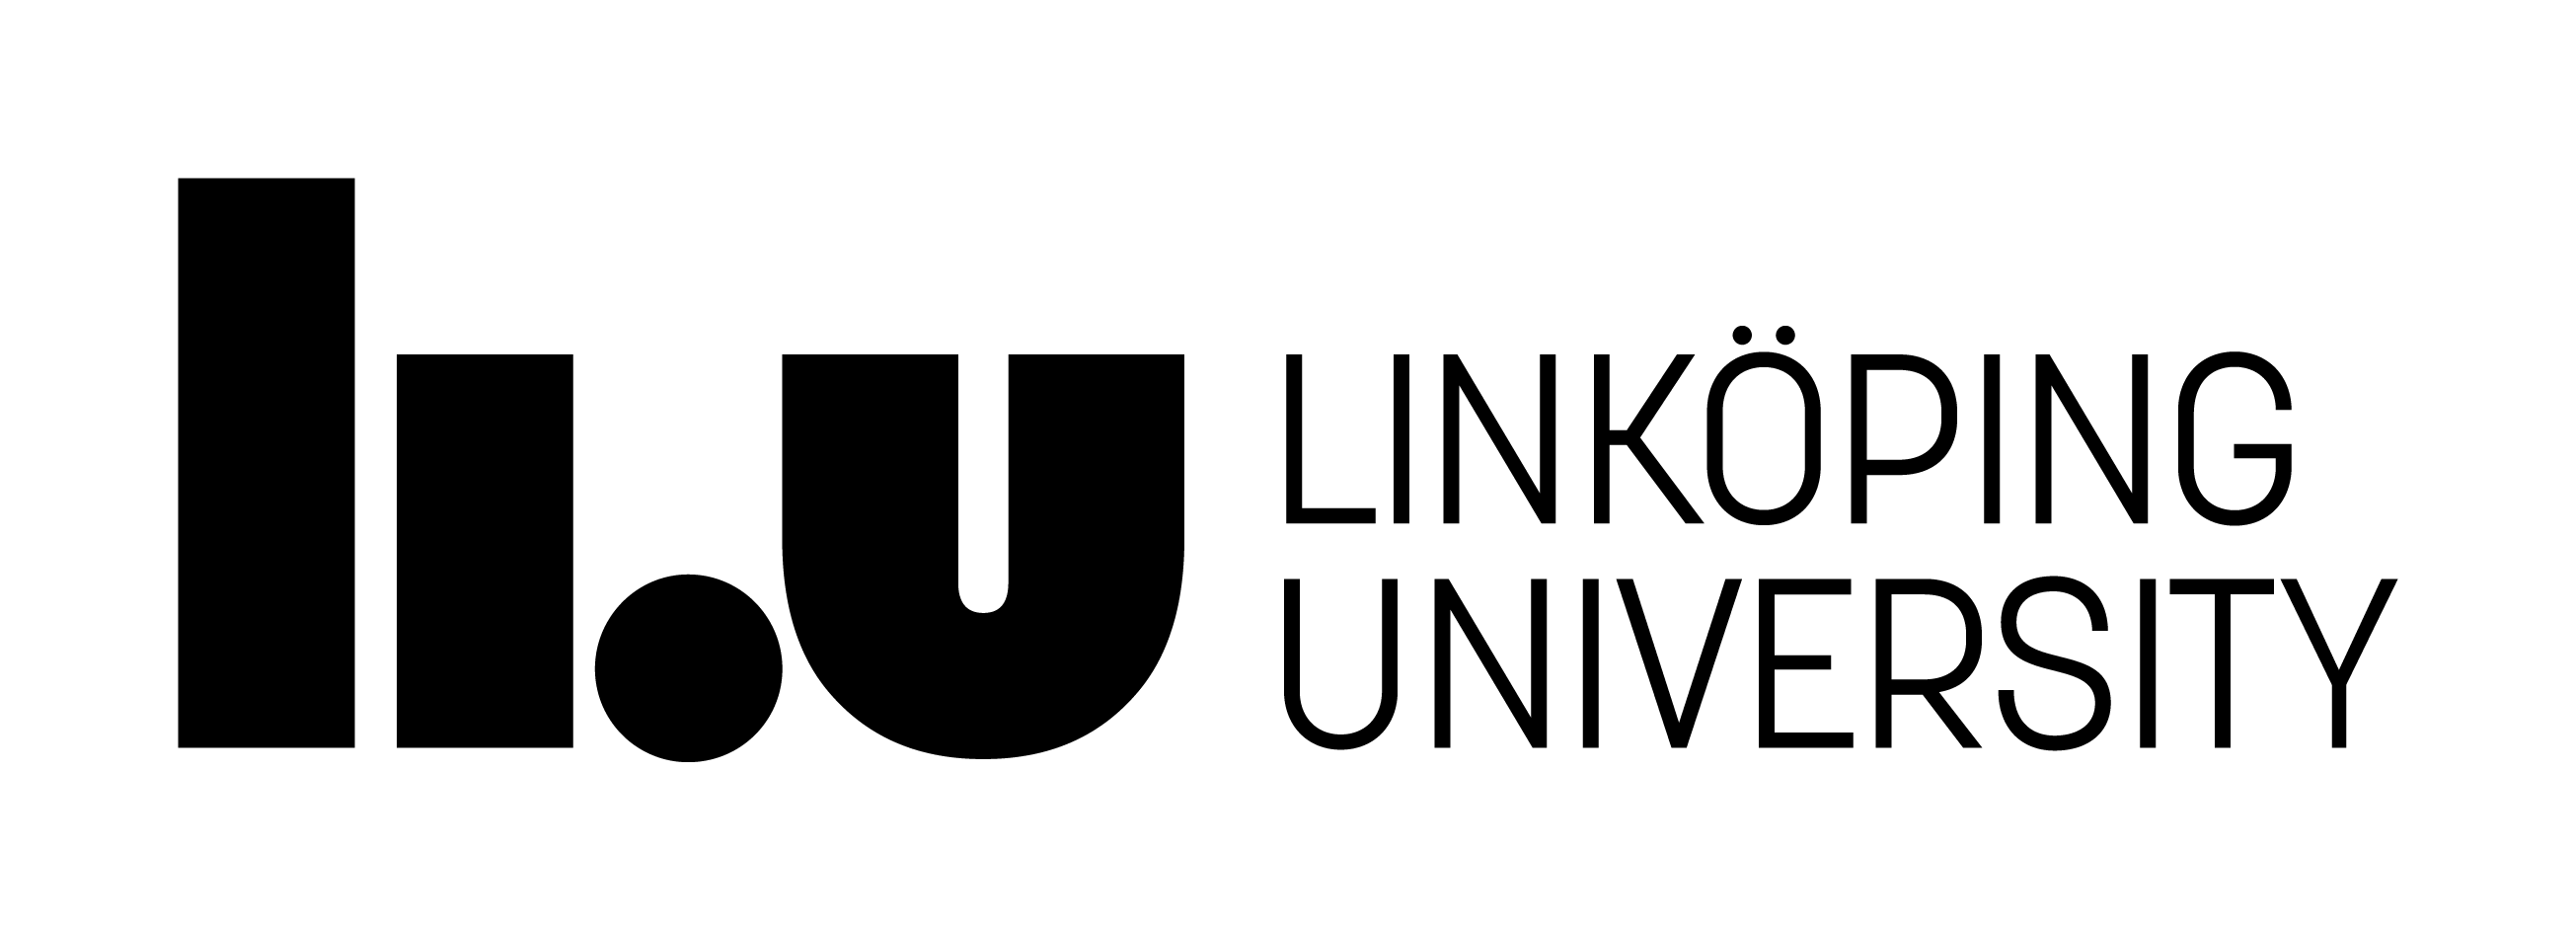 Liu Logo - Download logotypeöping University